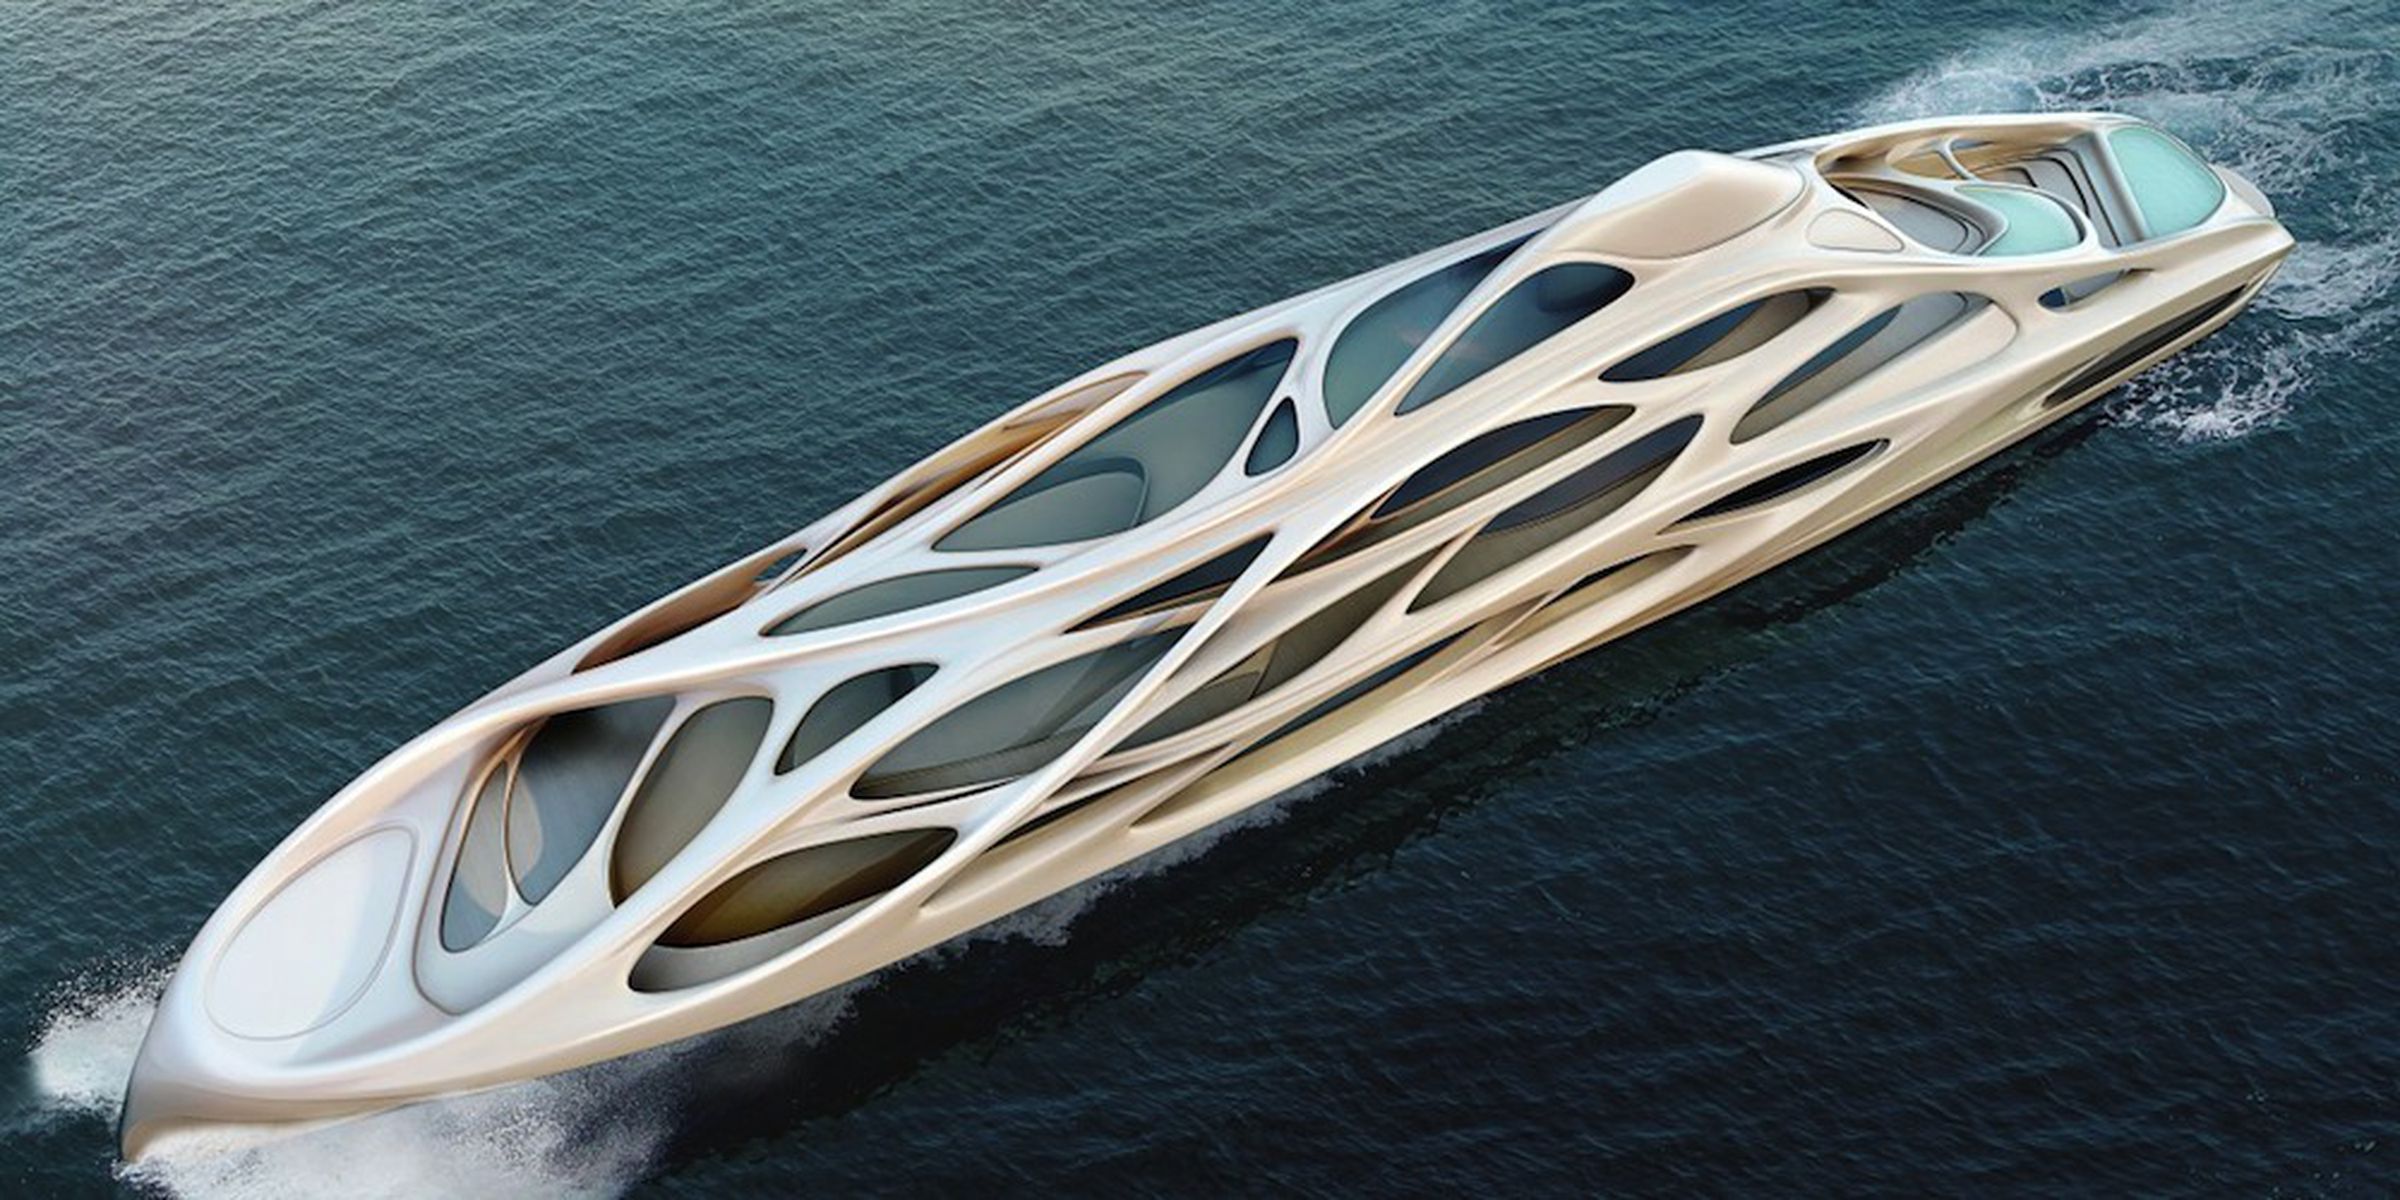 Unique Circle Yacht concept images